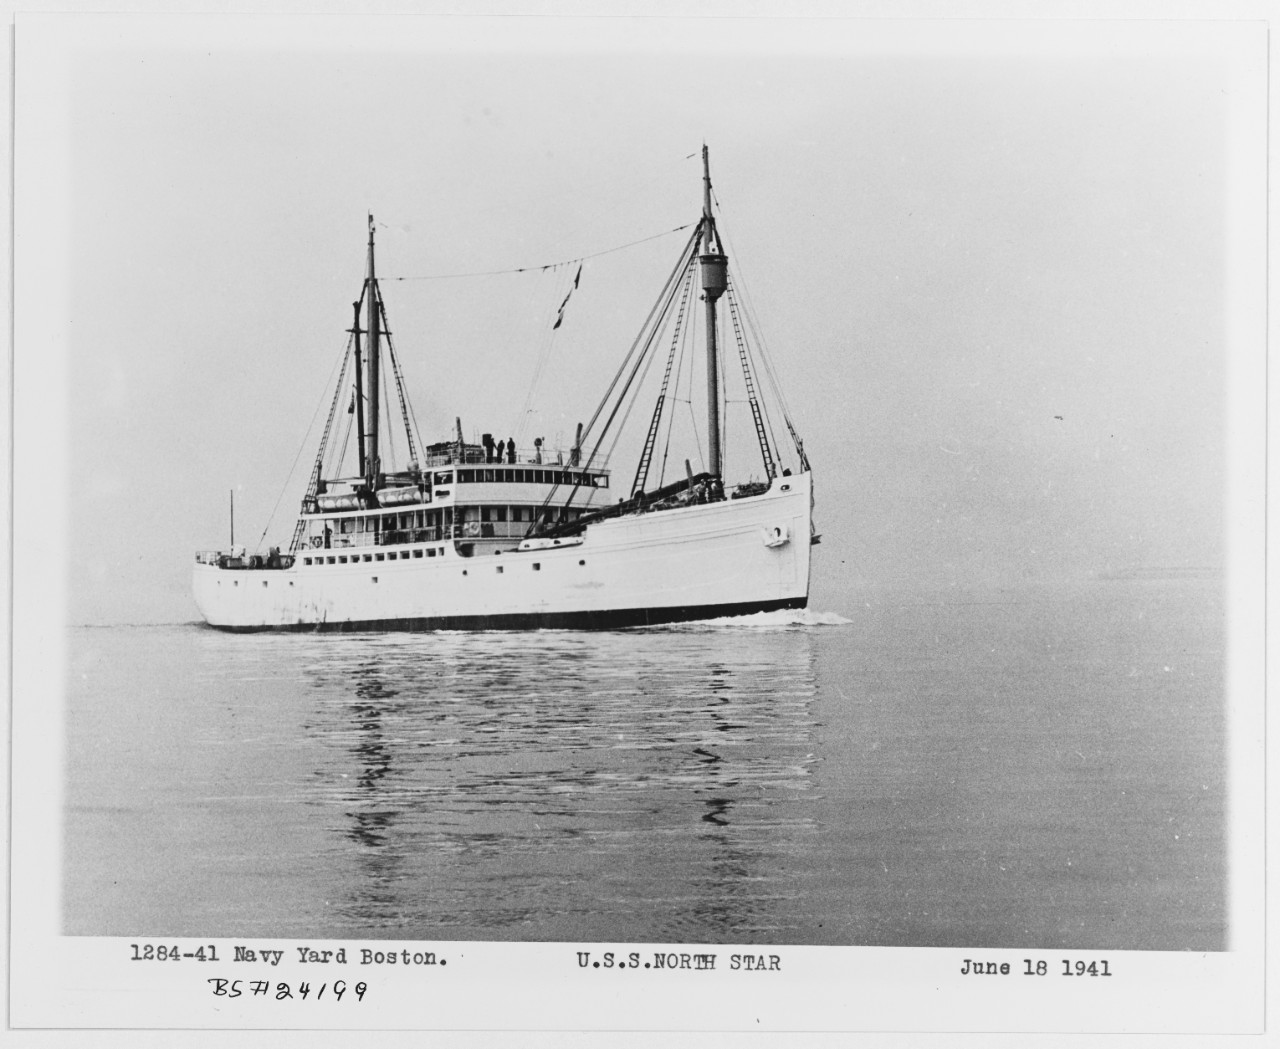 USCGC NORTH STAR